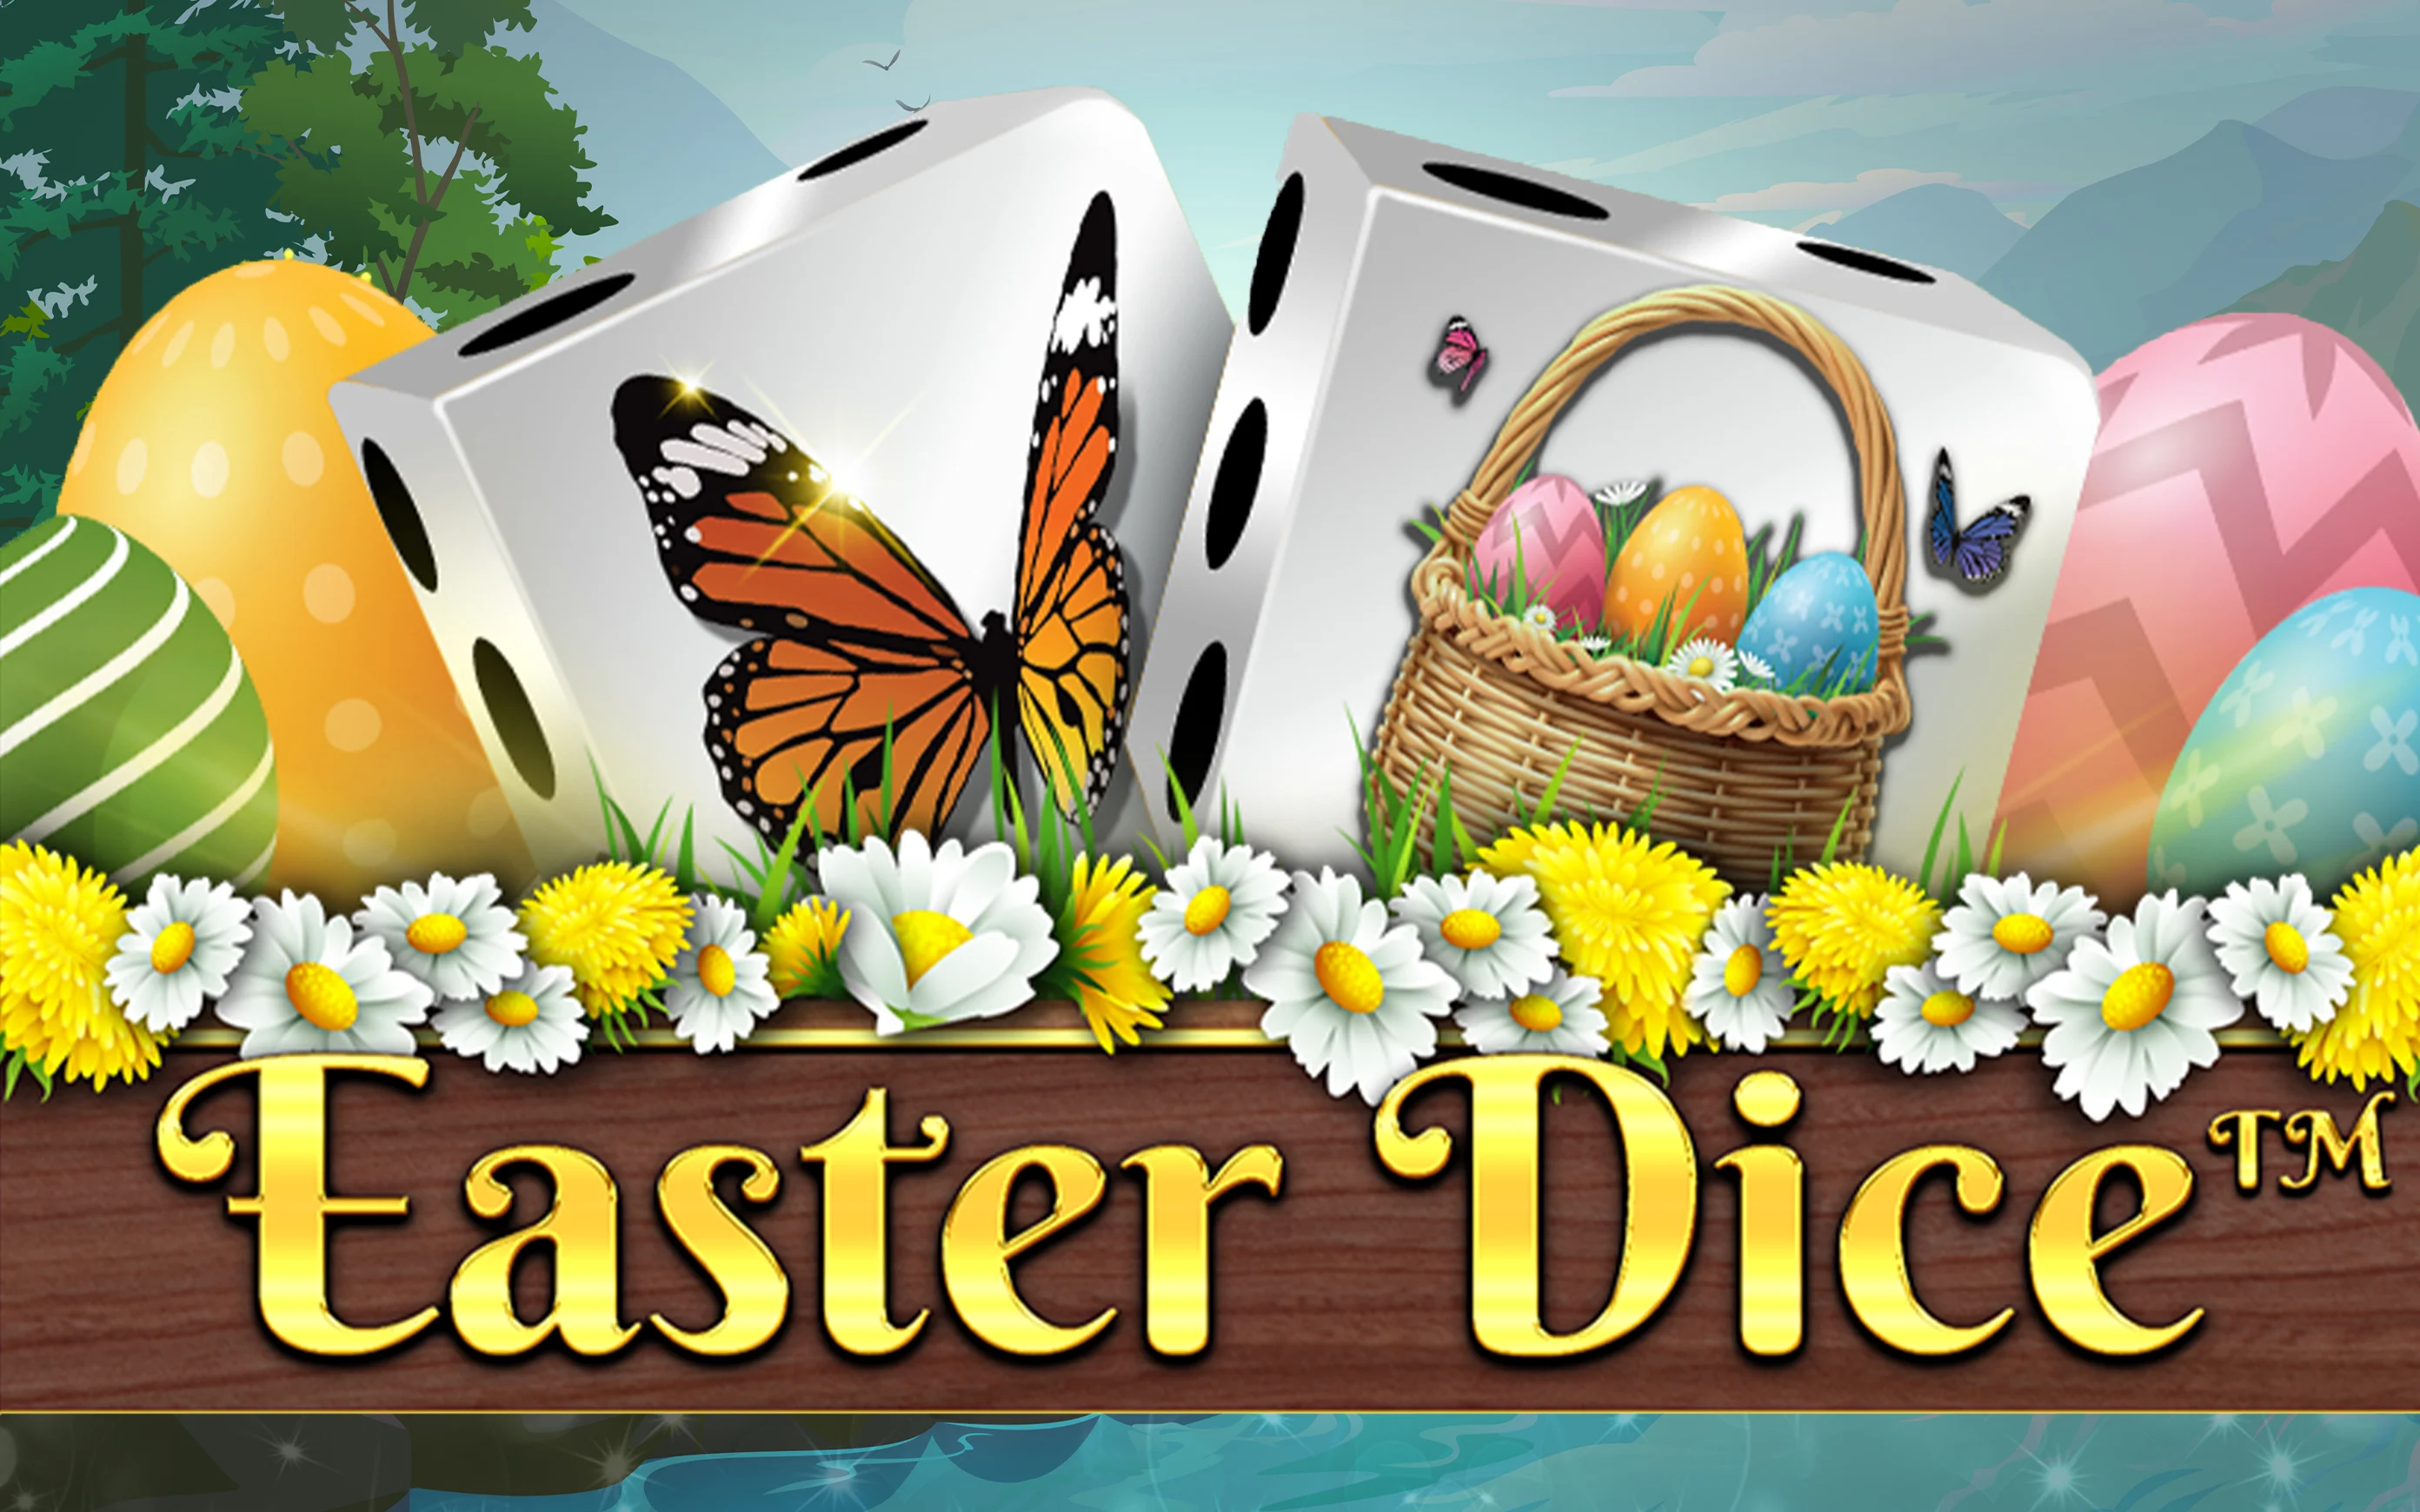 Zagraj w Easter Dice w kasynie online Starcasino.be